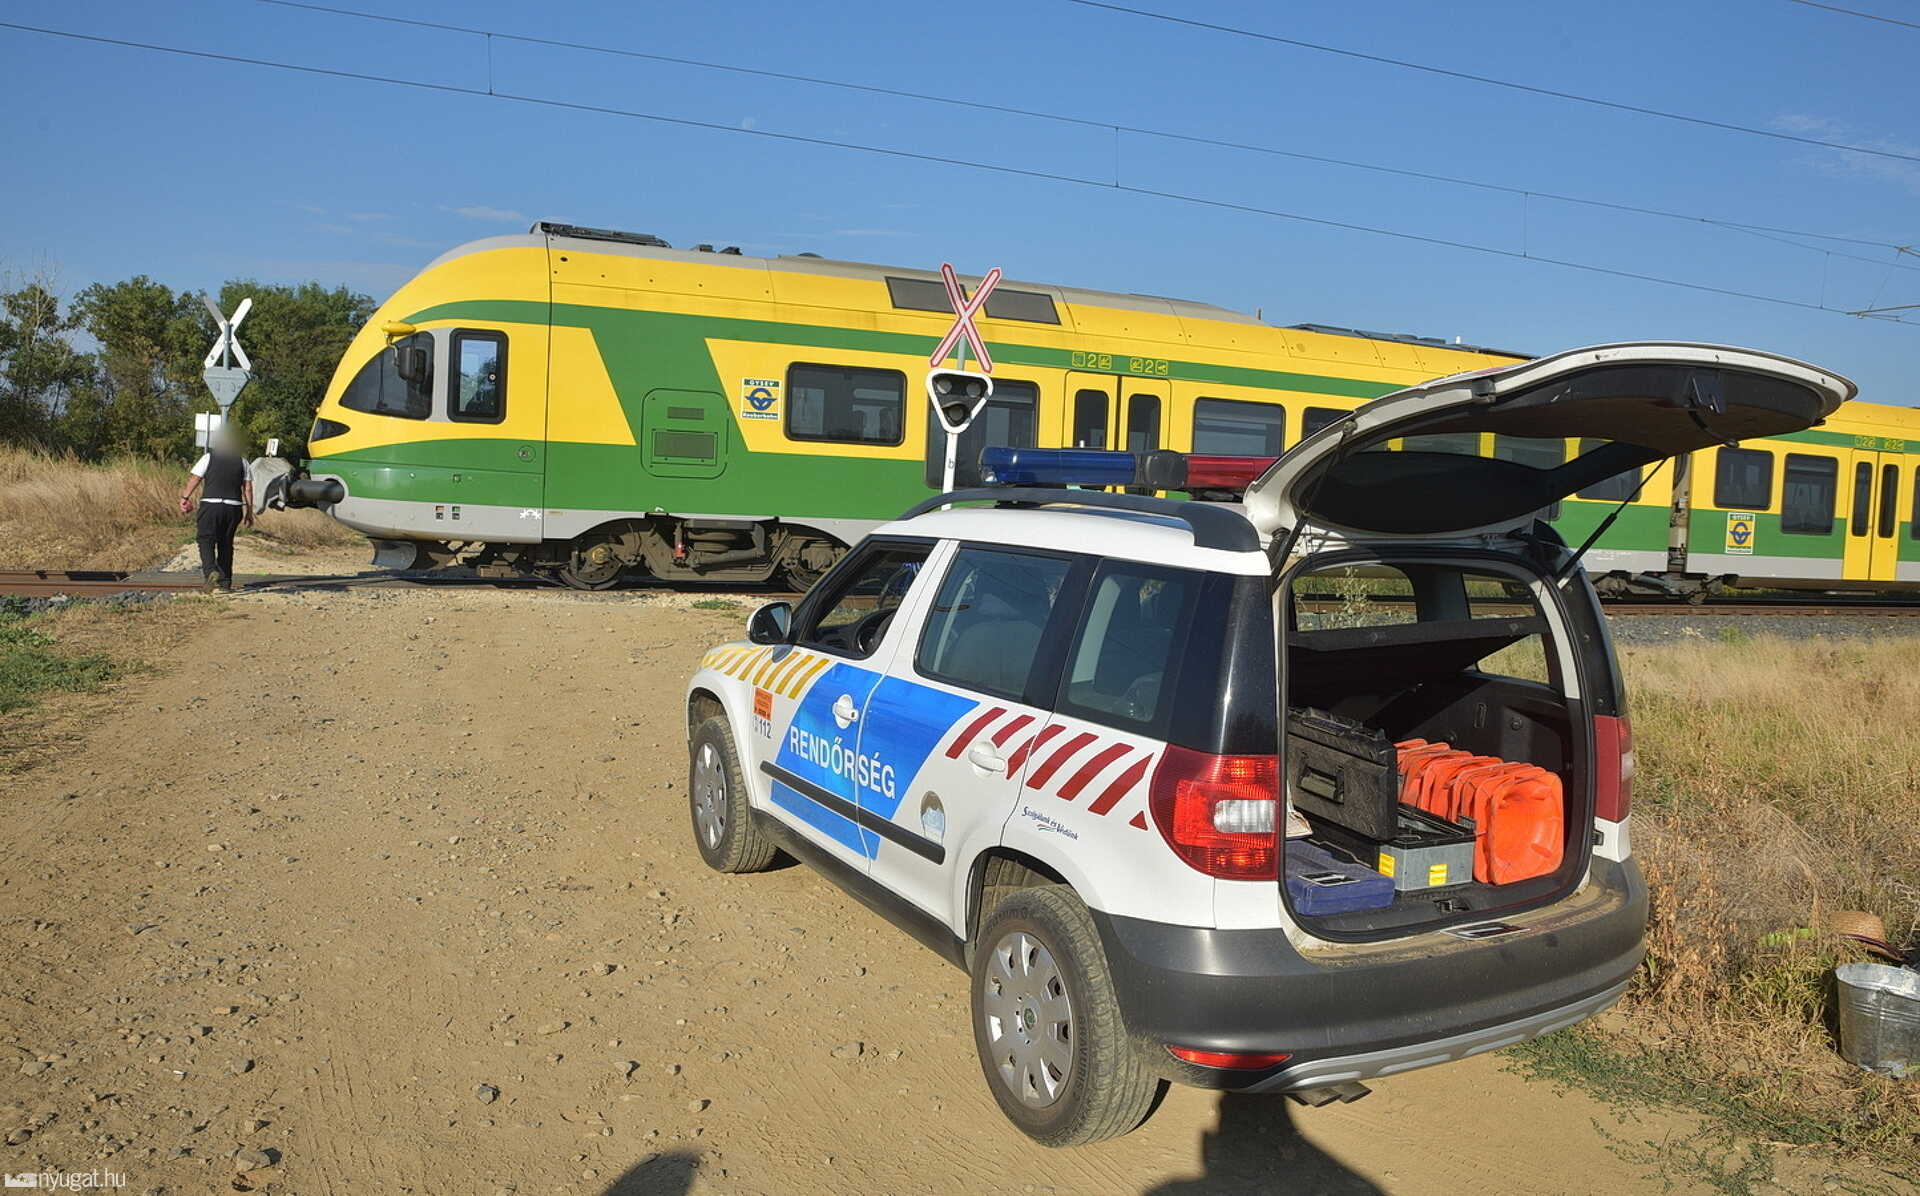 Авария поезда на Соркикапольной: он шел между путями и столкнулся с локомотивом, поэтому дождался смерти